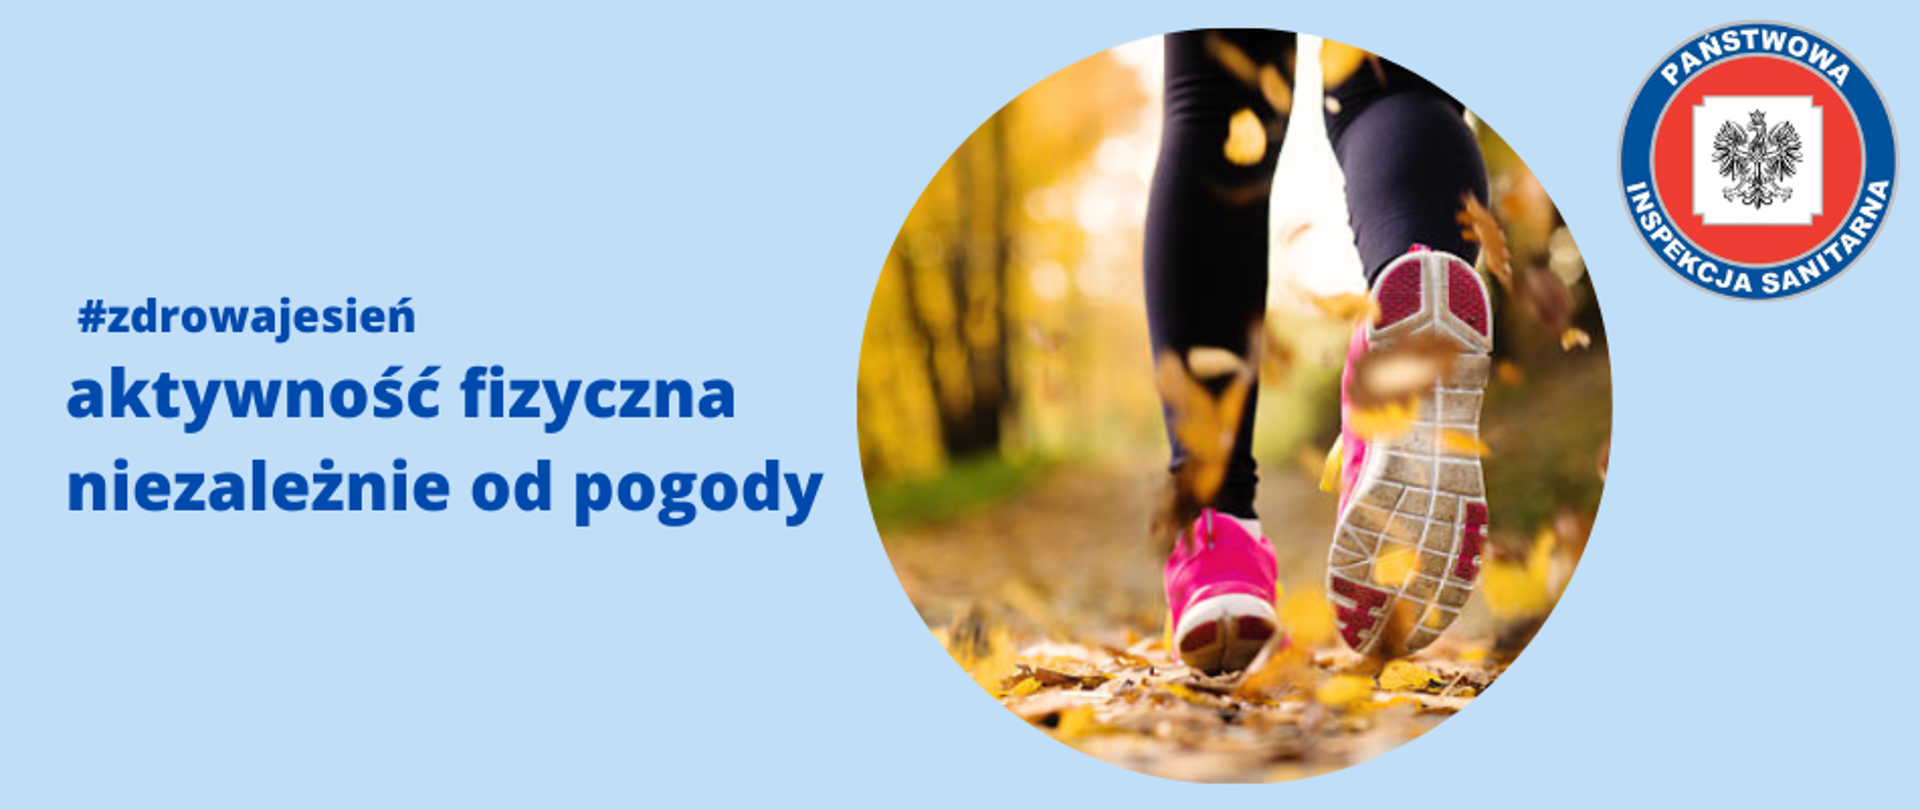 Zdjęcie przedstawia tytuł "#zdrowajesień- aktywność fizyczna niezależnie od pogody - LOGO", okrągłe zdjęcie z nogami biegnącej osoby po żółtych liściach oraz logo Państwowej Inspekcji Sanitarnej